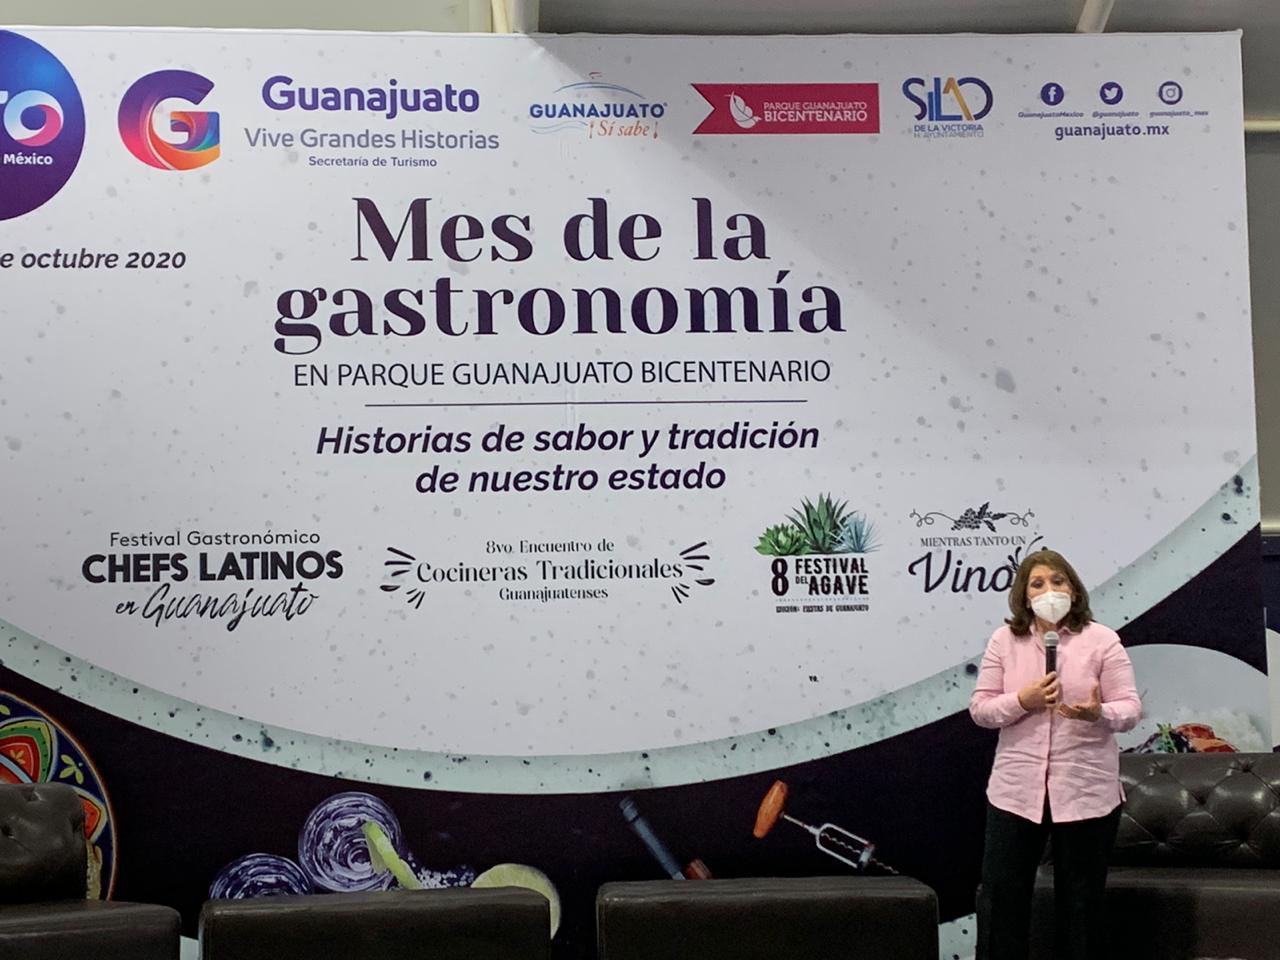 Invitan al Mes Gastronómico en Parque Guanajuato Bicentenario 